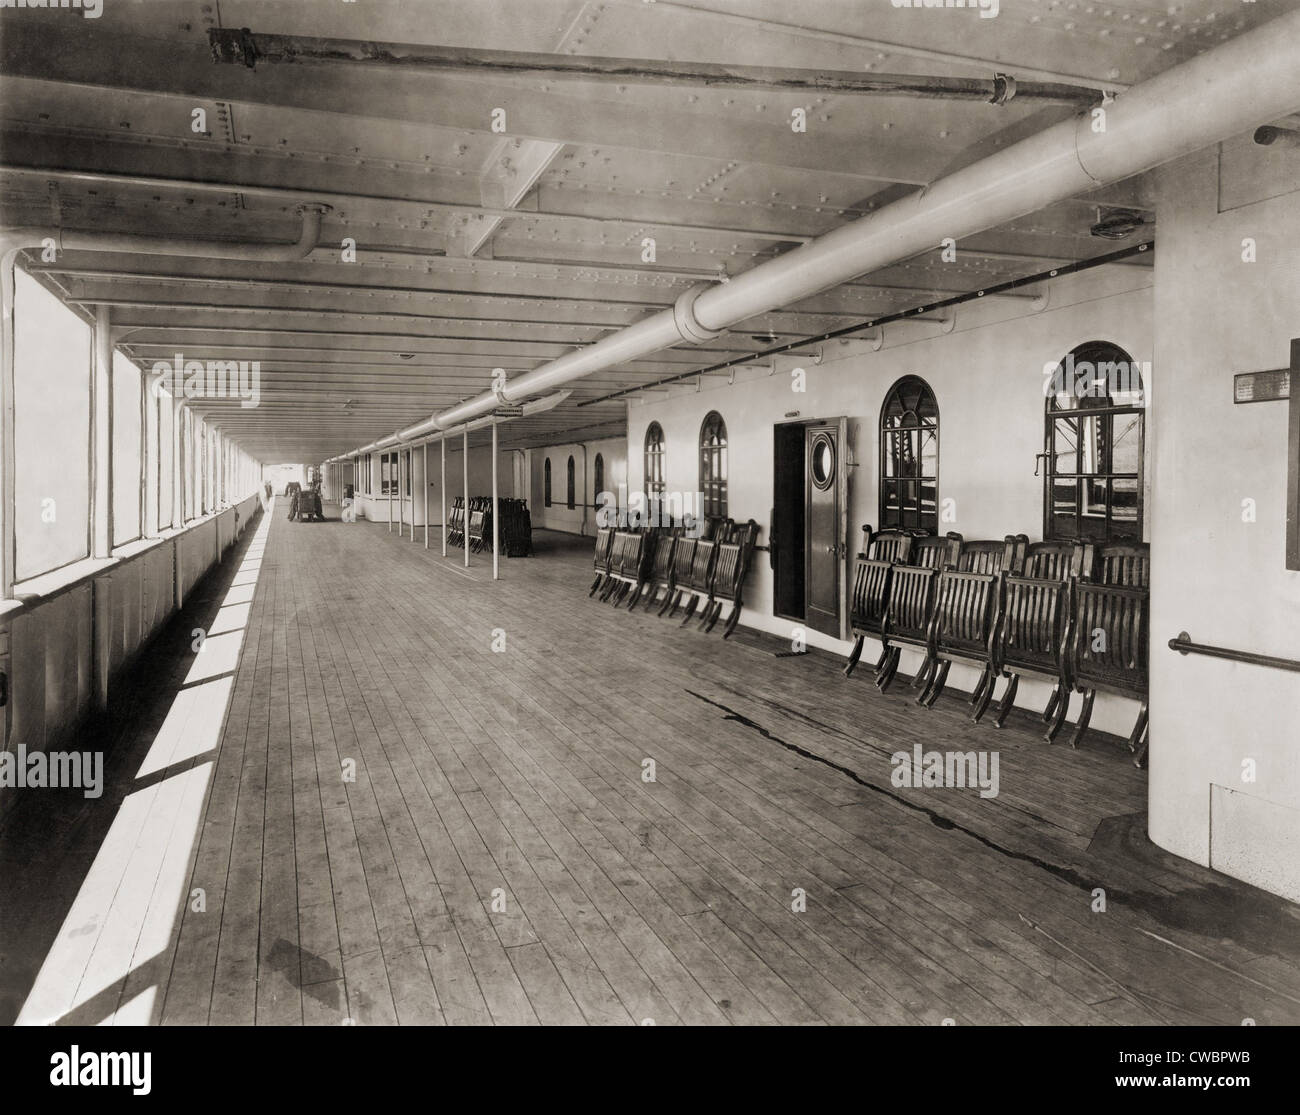 Liegestühle auf der großen Promenade von der Ill-Fated Luxus Ozeandampfer  Titanic. 1912 Stockfotografie - Alamy